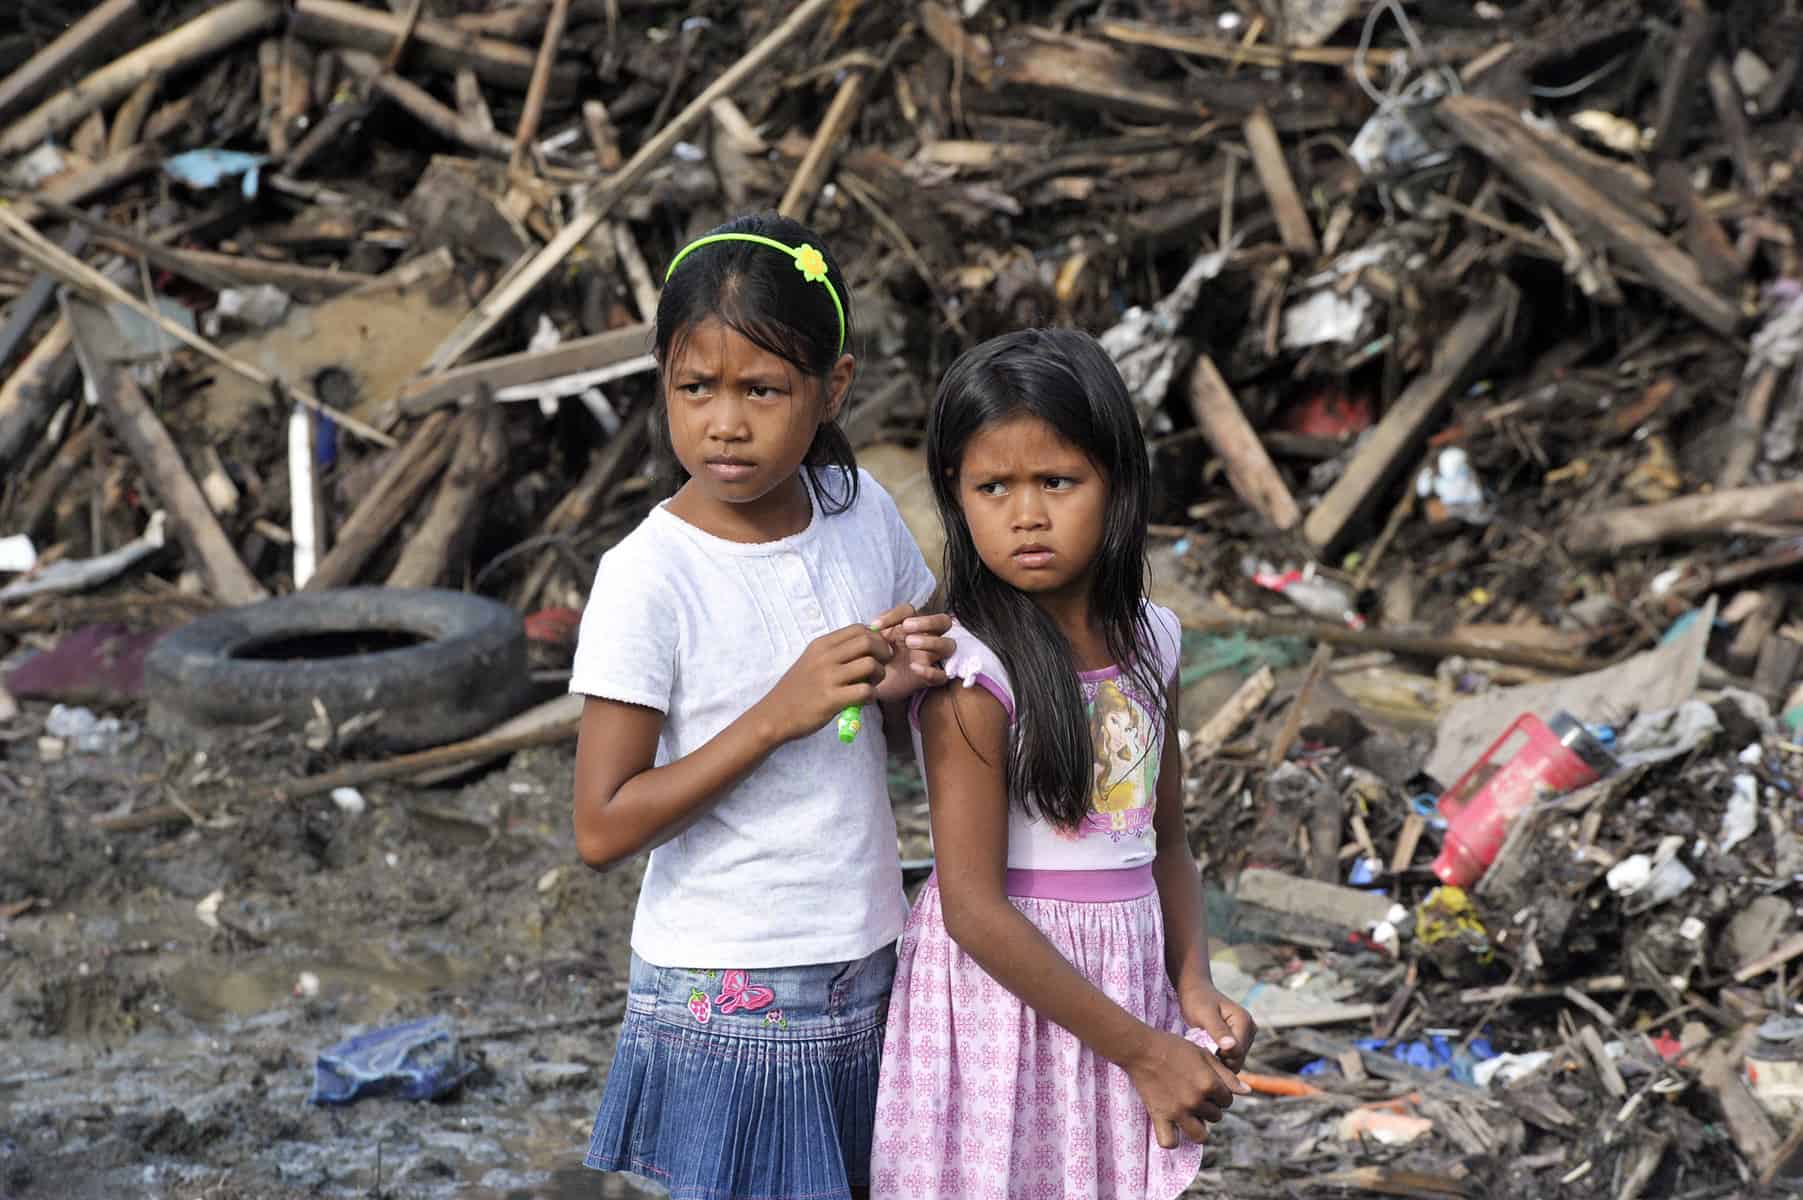 Survivors of Super Typhoon Yolanda in Tacloban City, Philippines, 2013. (cc) UN Photo/Evan Schneider